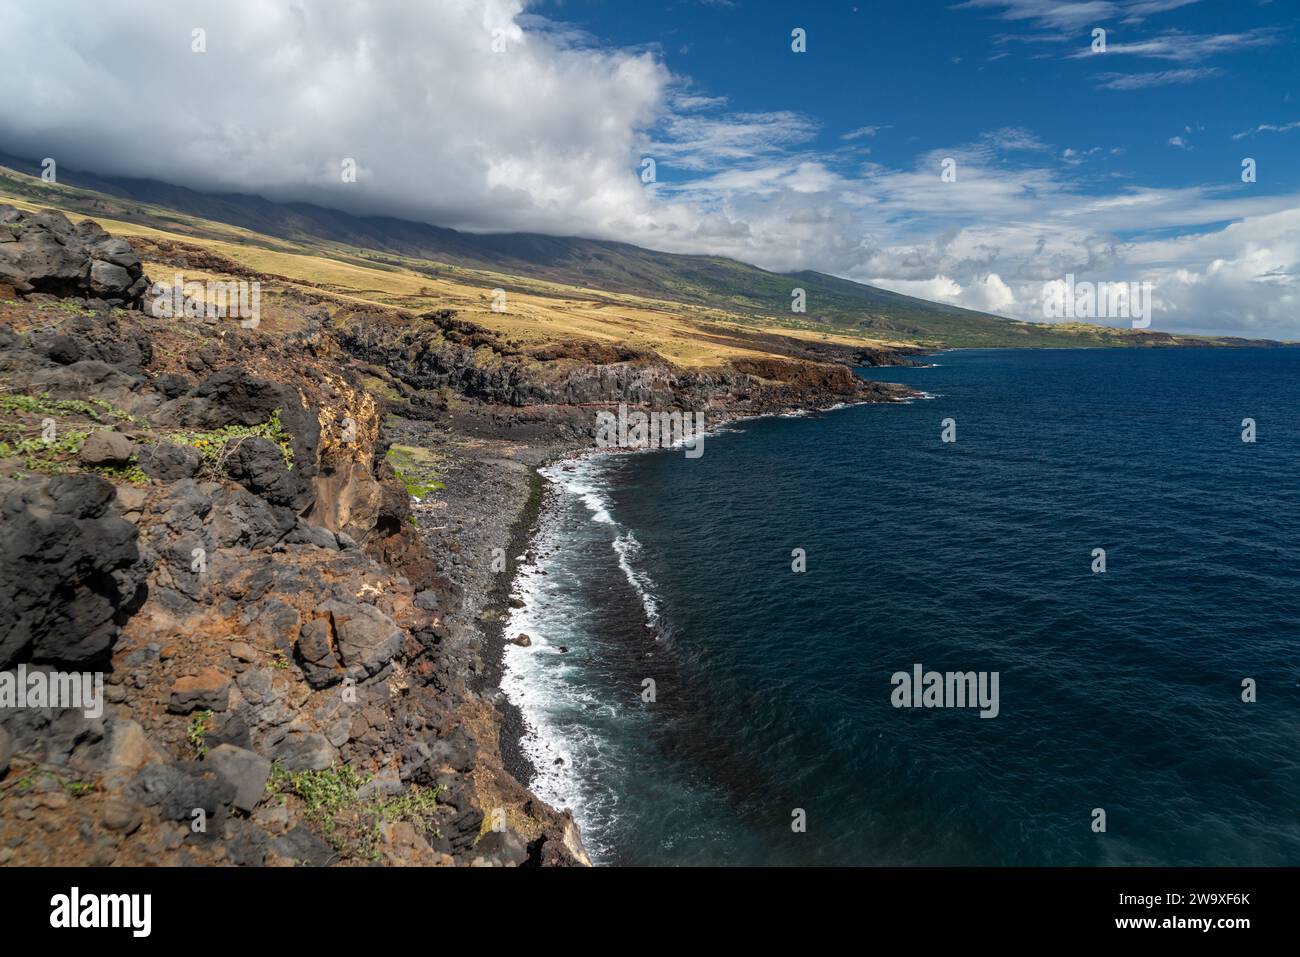 Le scogliere di lava torreggiano sulle acque blu profonde di Maui, mostrando il dinamico paesaggio vulcanico dell'isola. Foto Stock